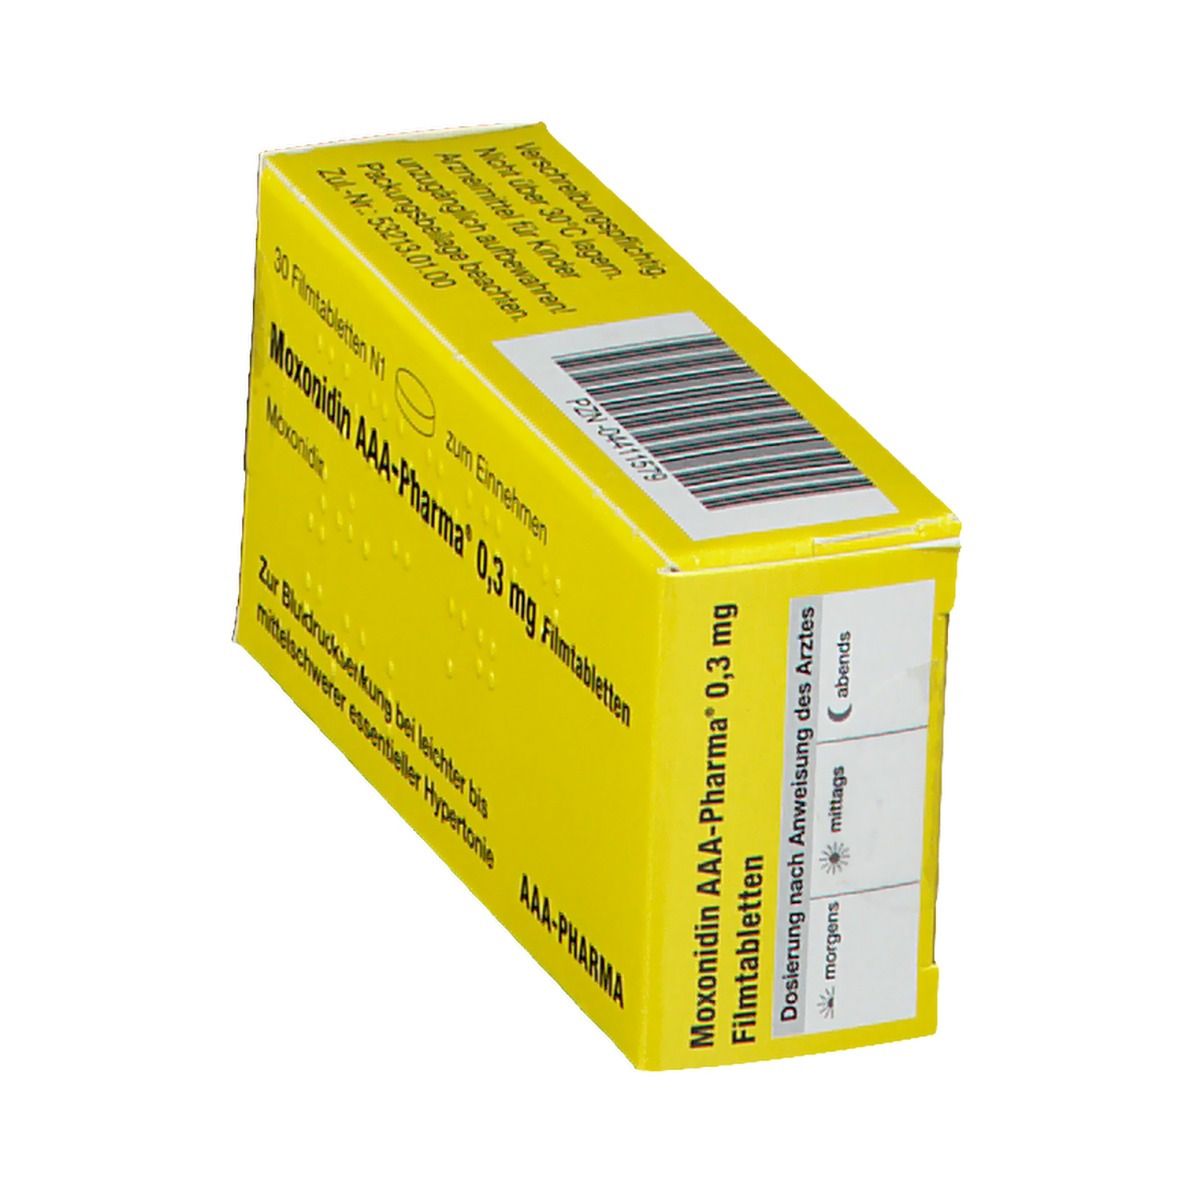 Moxonidin AAA-Pharma® 0,3 mg